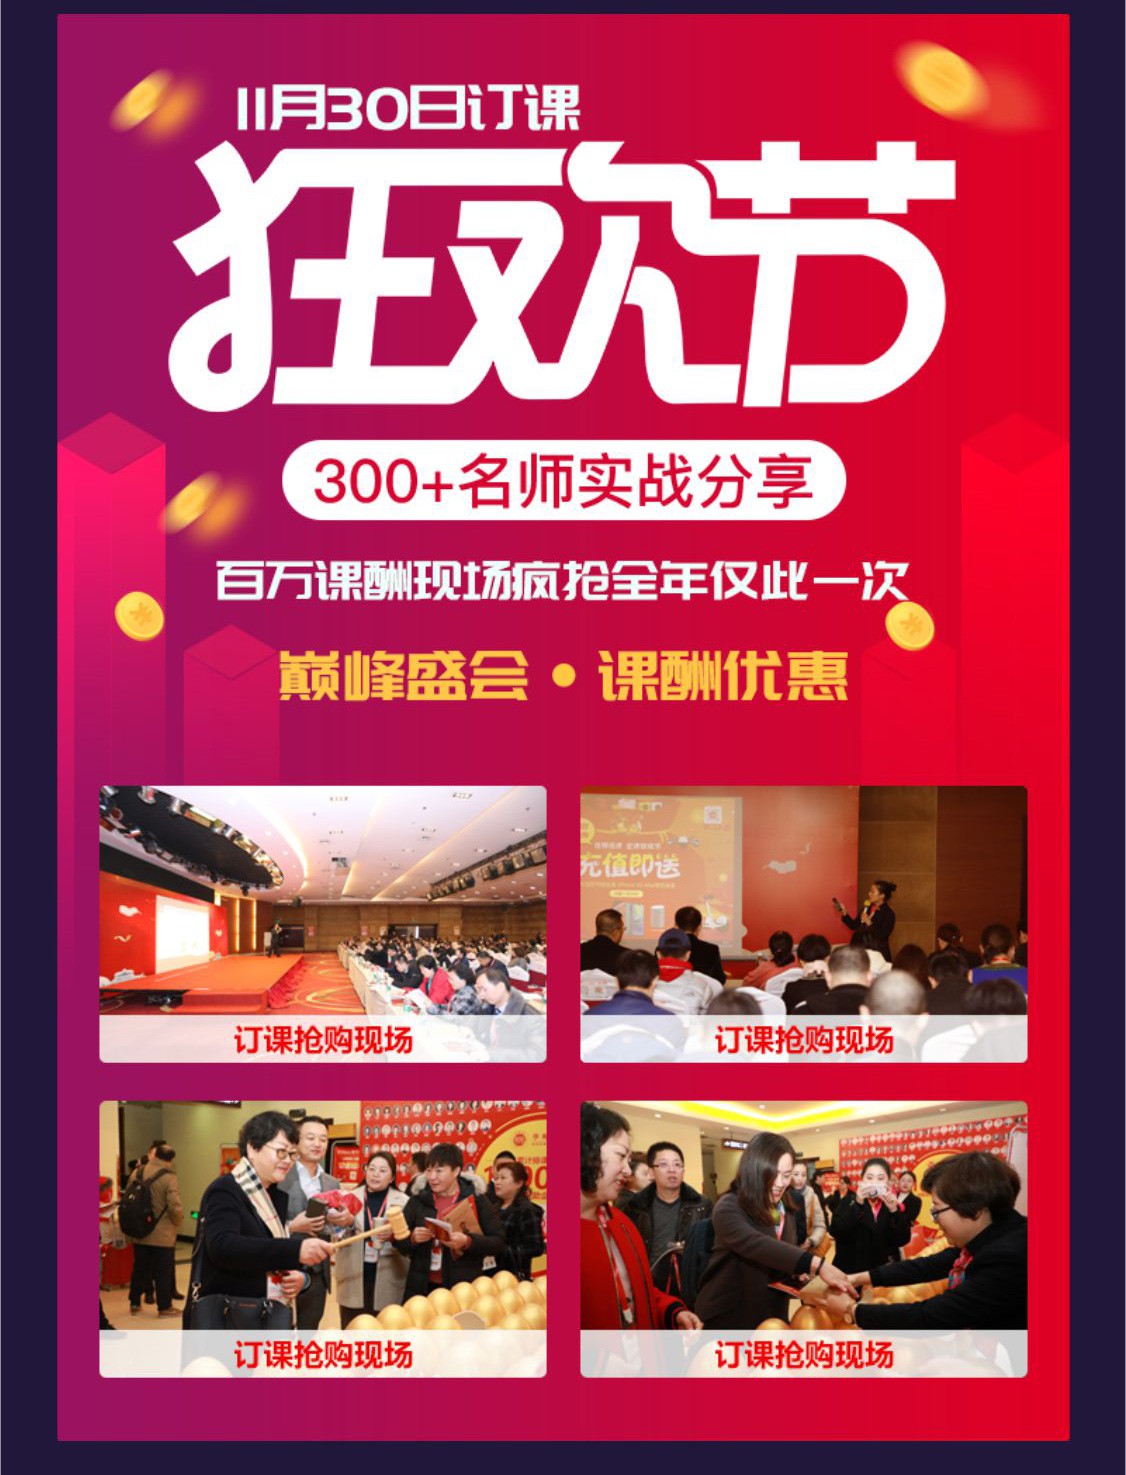 2019国际培训产品博览会(培博会)宣传H5长图(1)_19.jpg